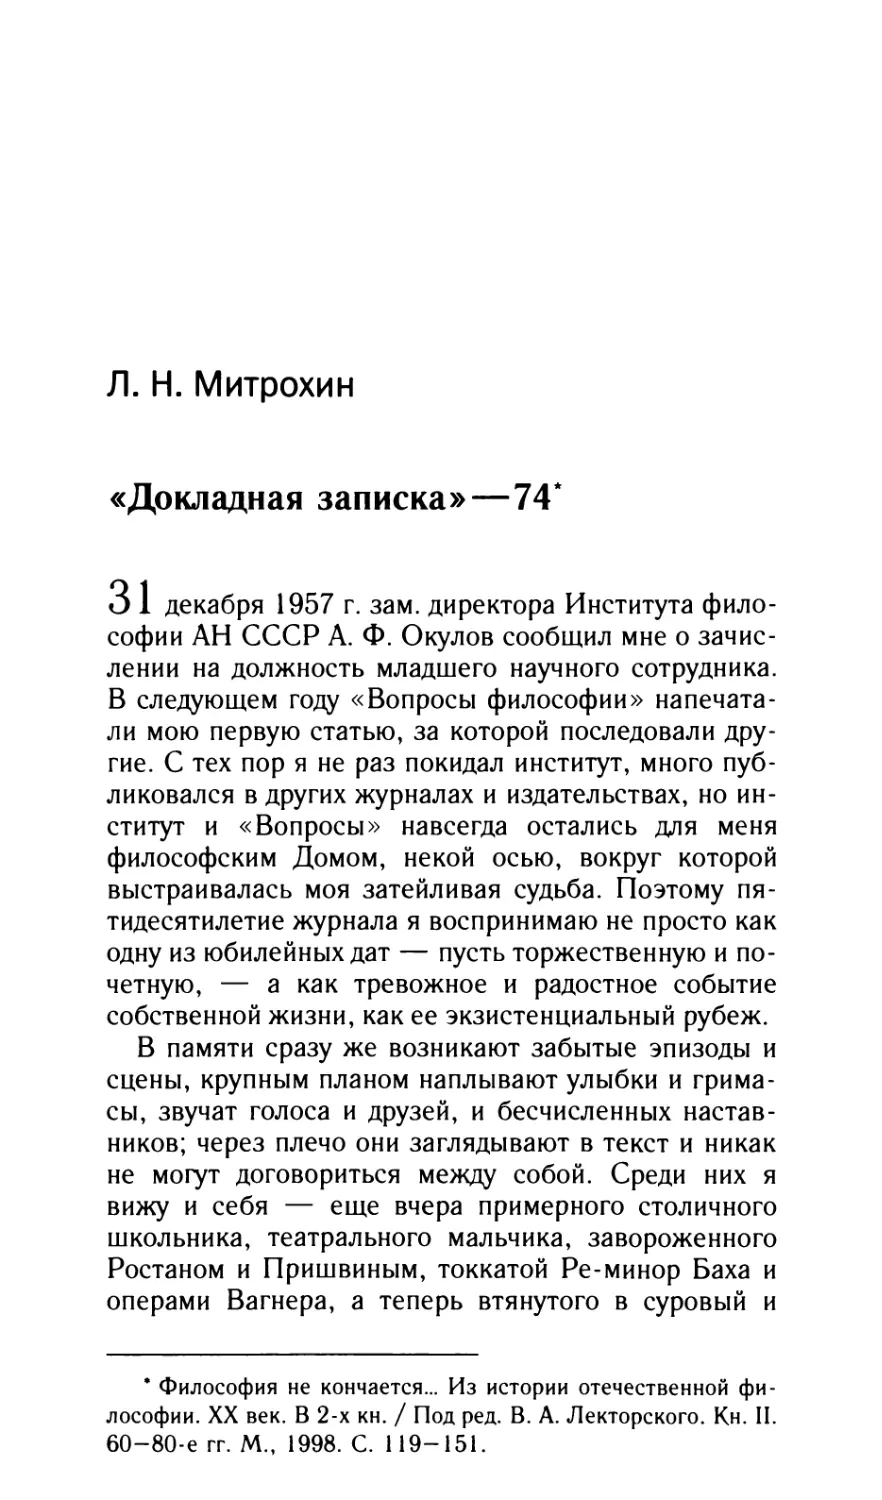 Митрохин Л.Н. «Докладная записка»–74